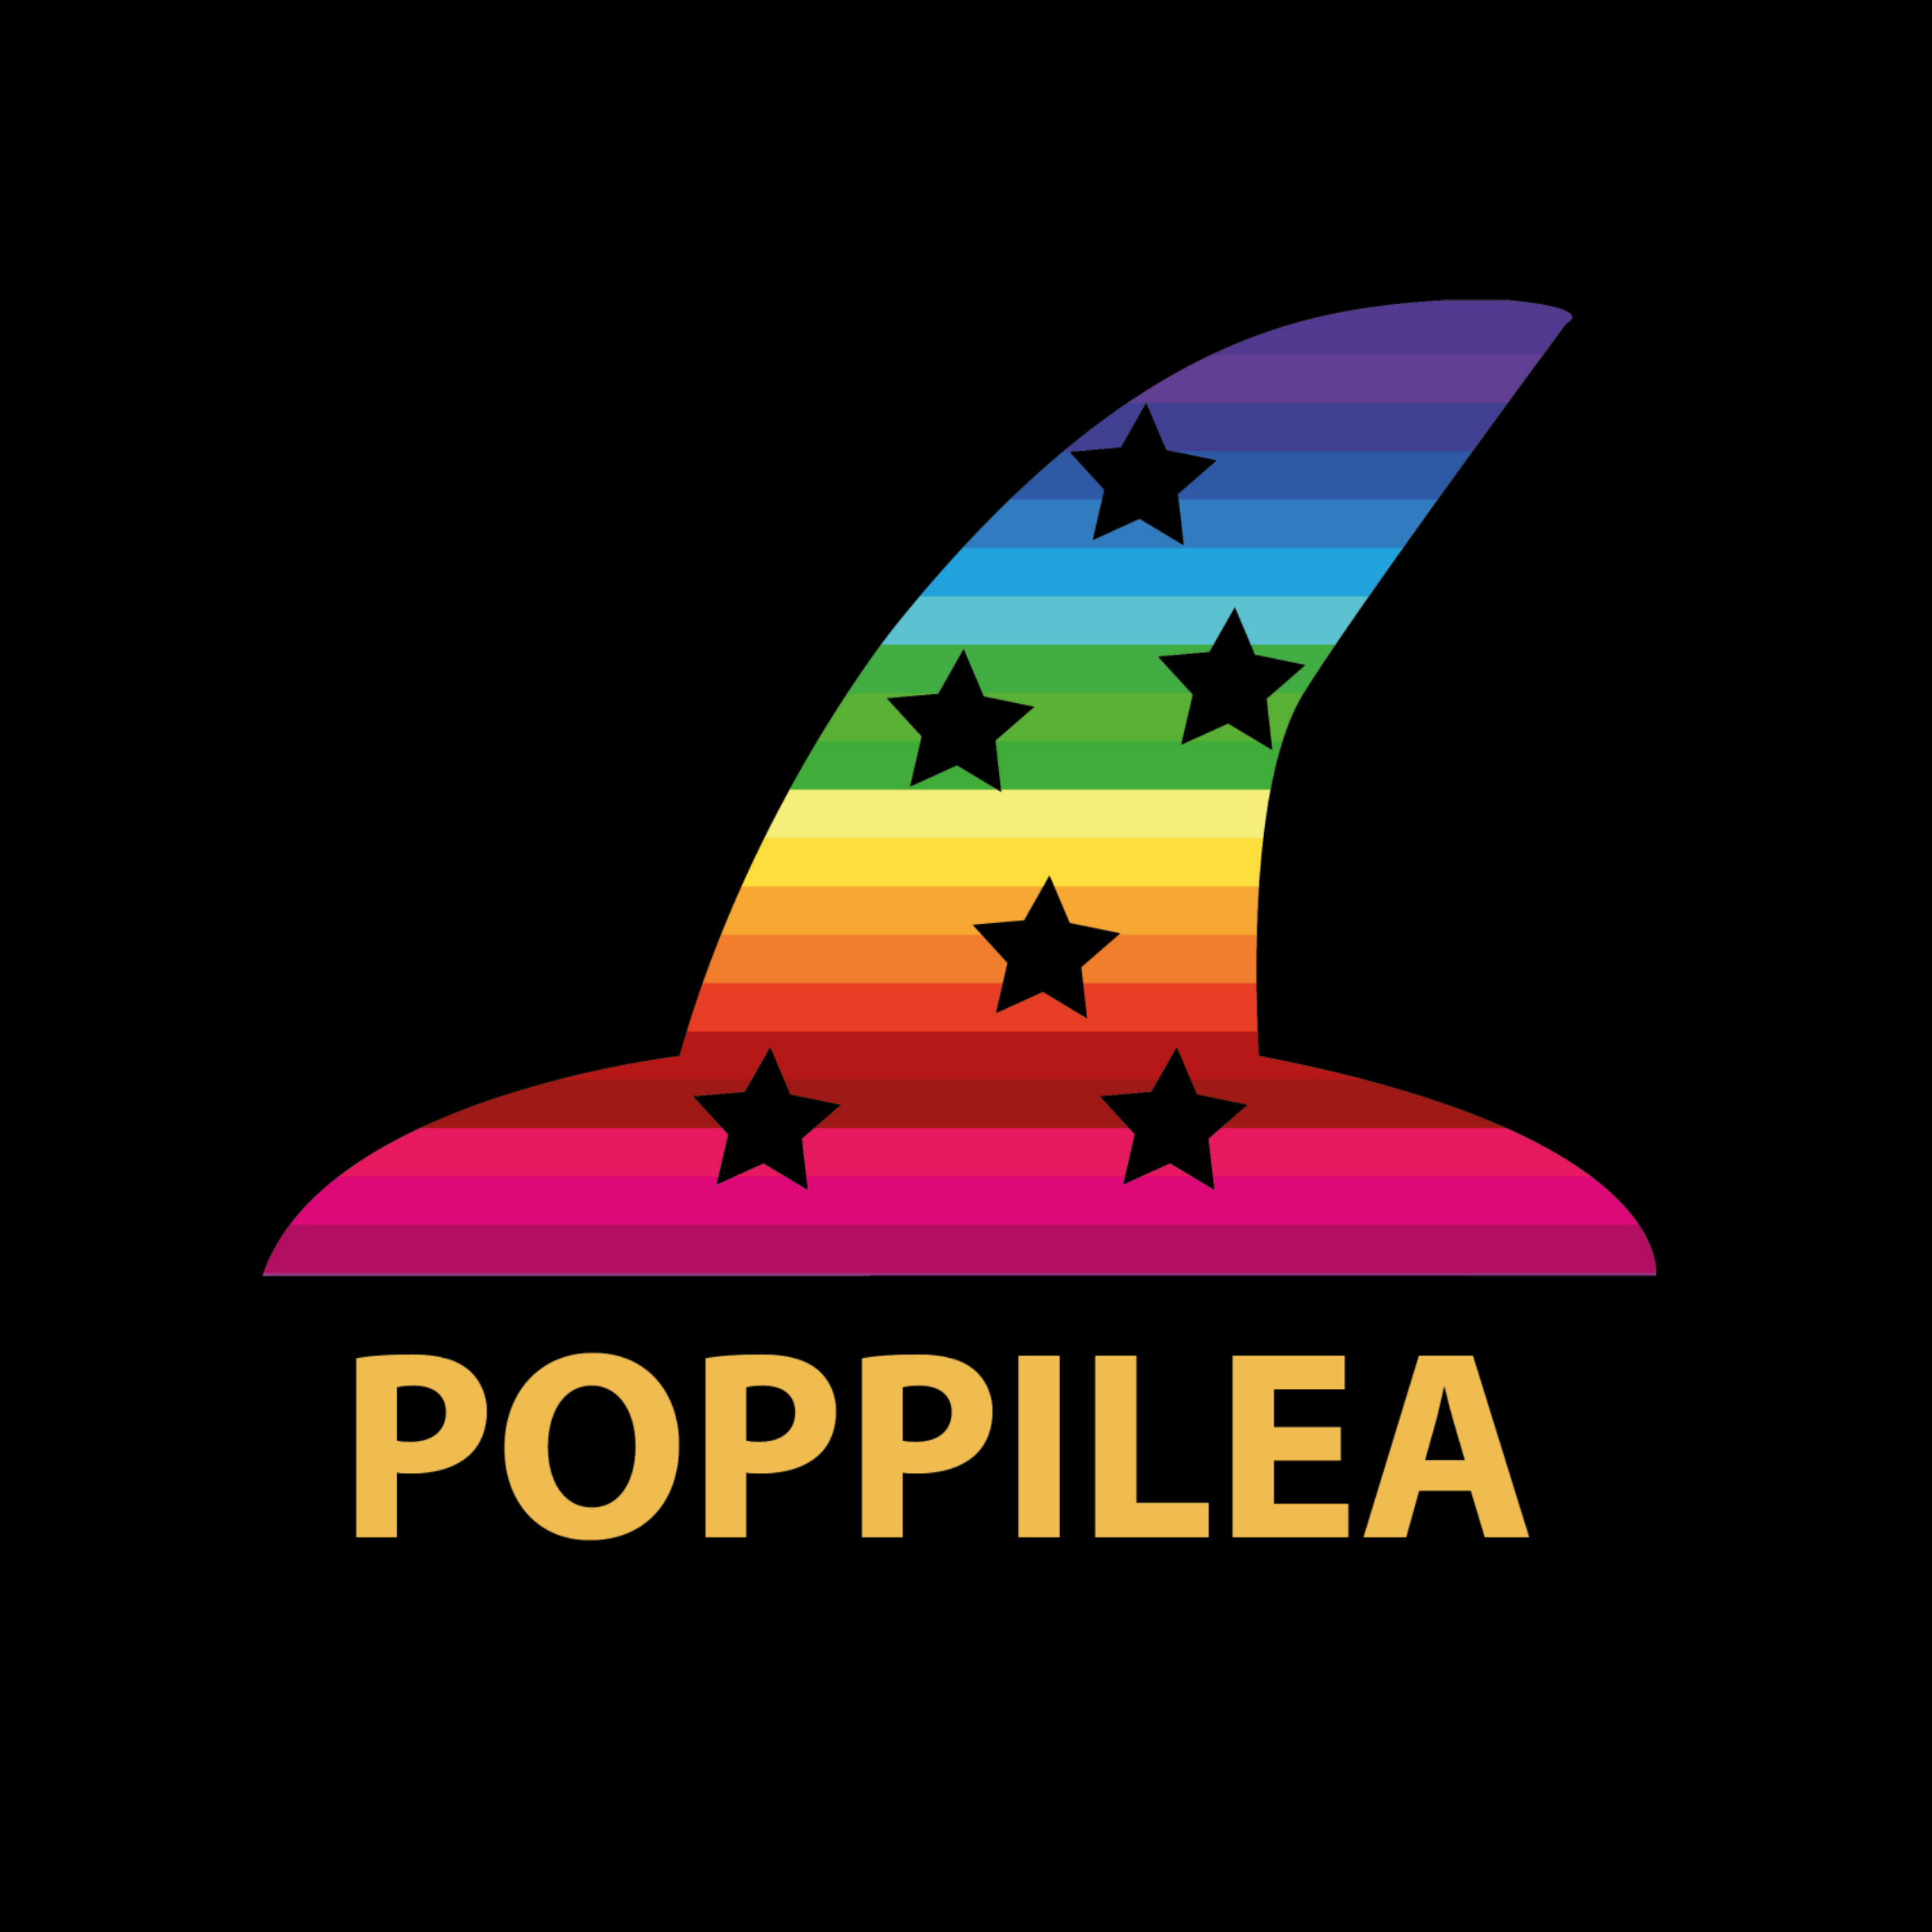 Poppilea